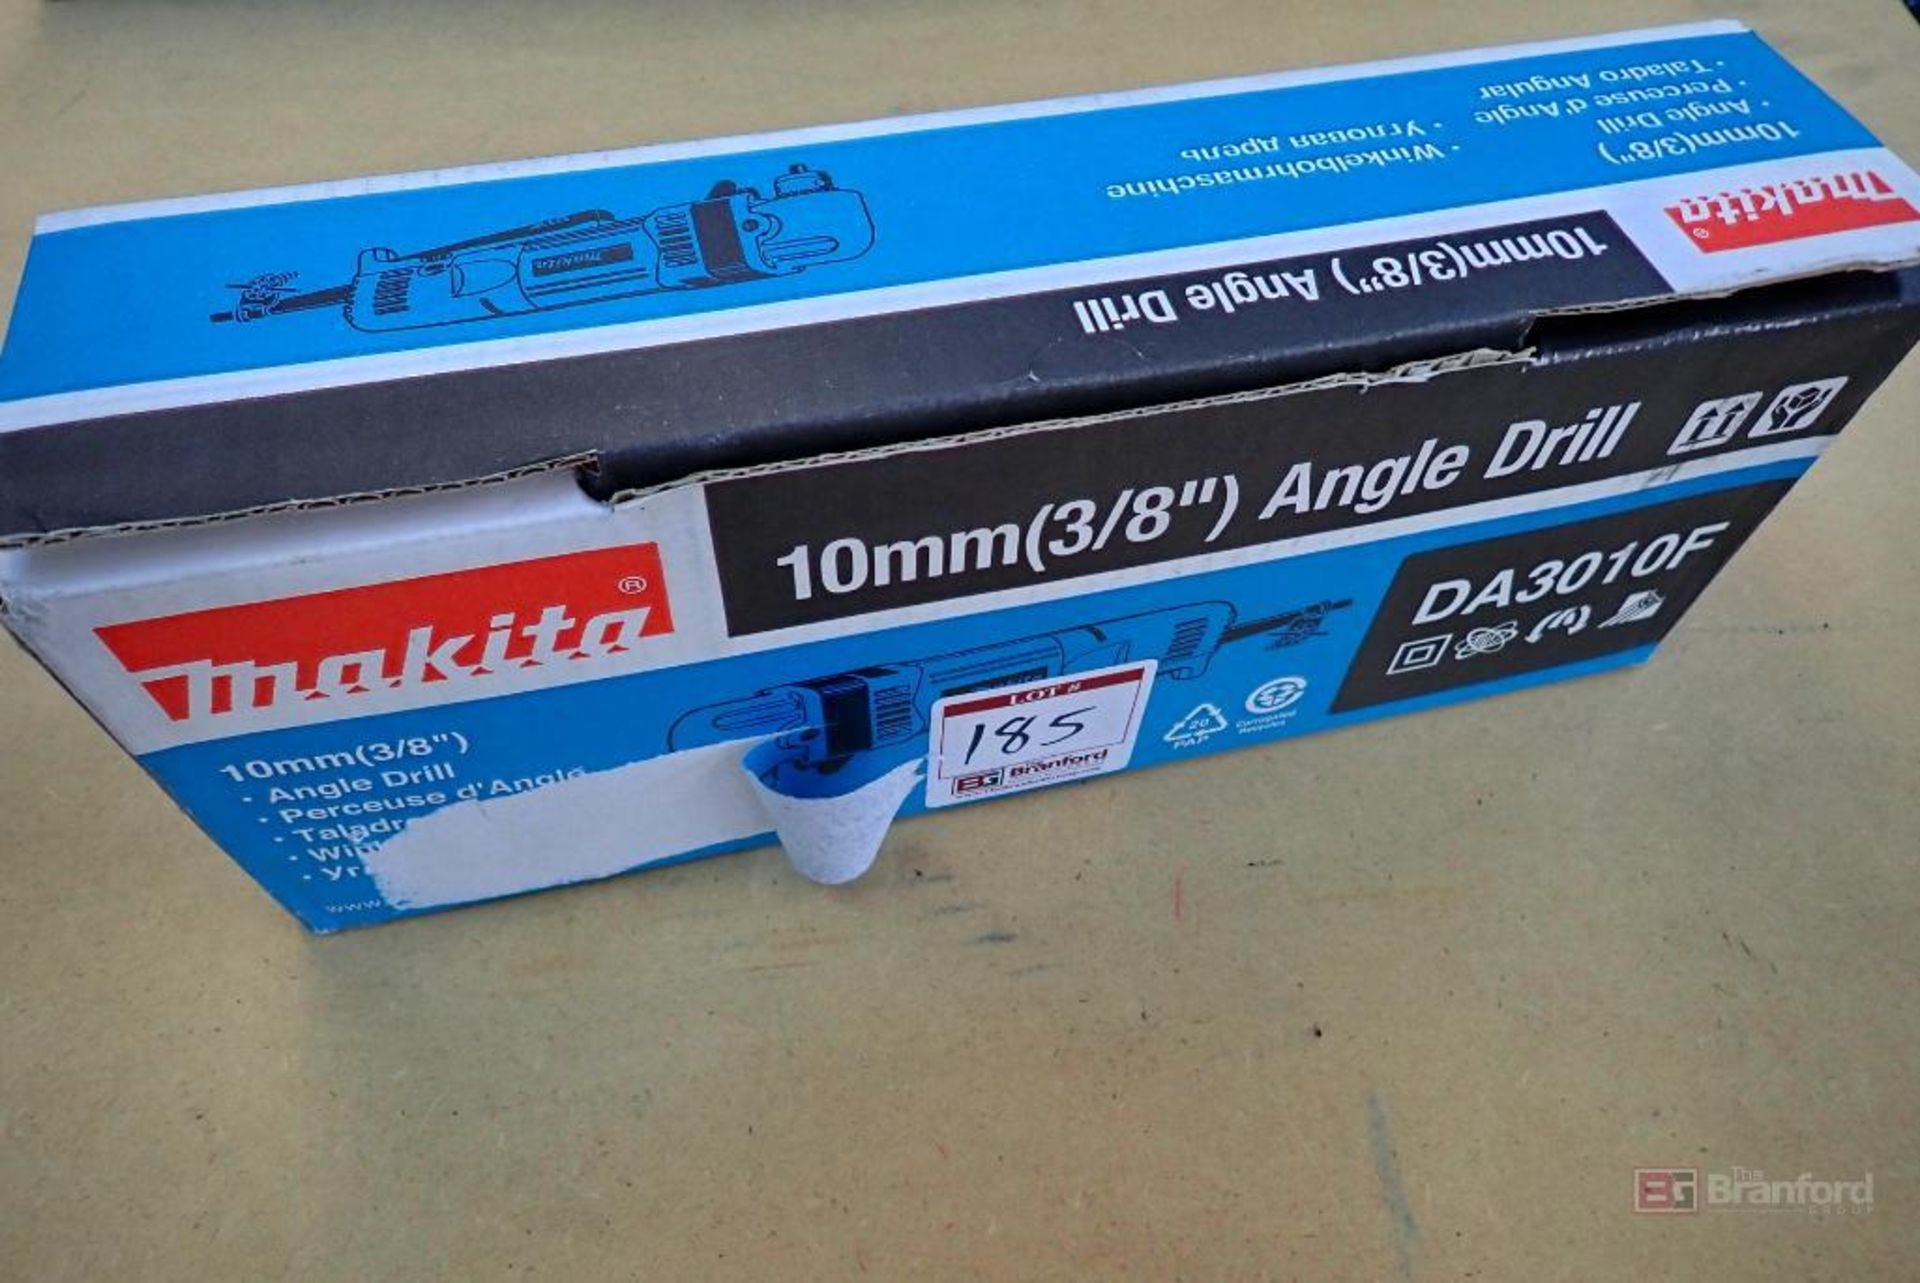 Makita DA3010F 10mm (3/8") Angle Drill